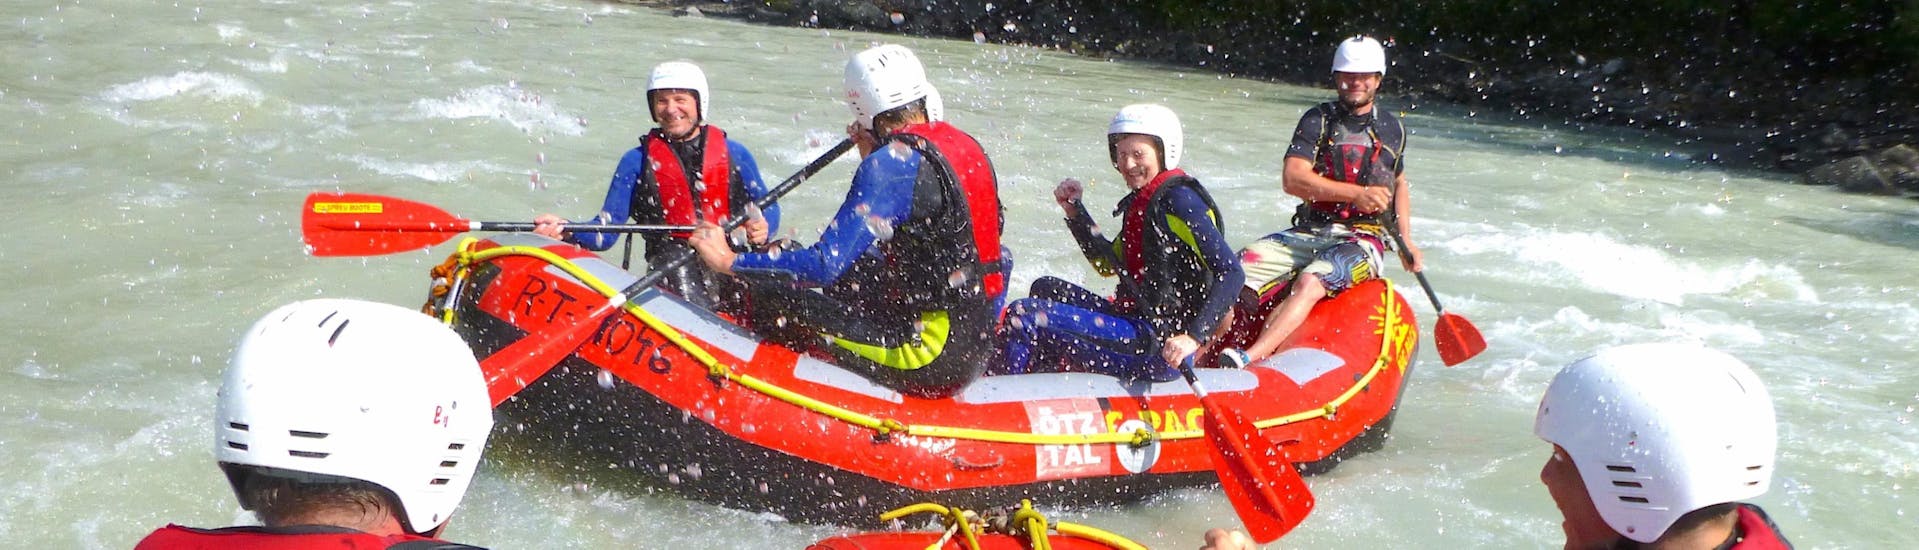 Het water spat op de gelukkige deelnemers van de Rafting "Actie" voor jong en oud - Imster Schlucht met CanKick Ötztal.